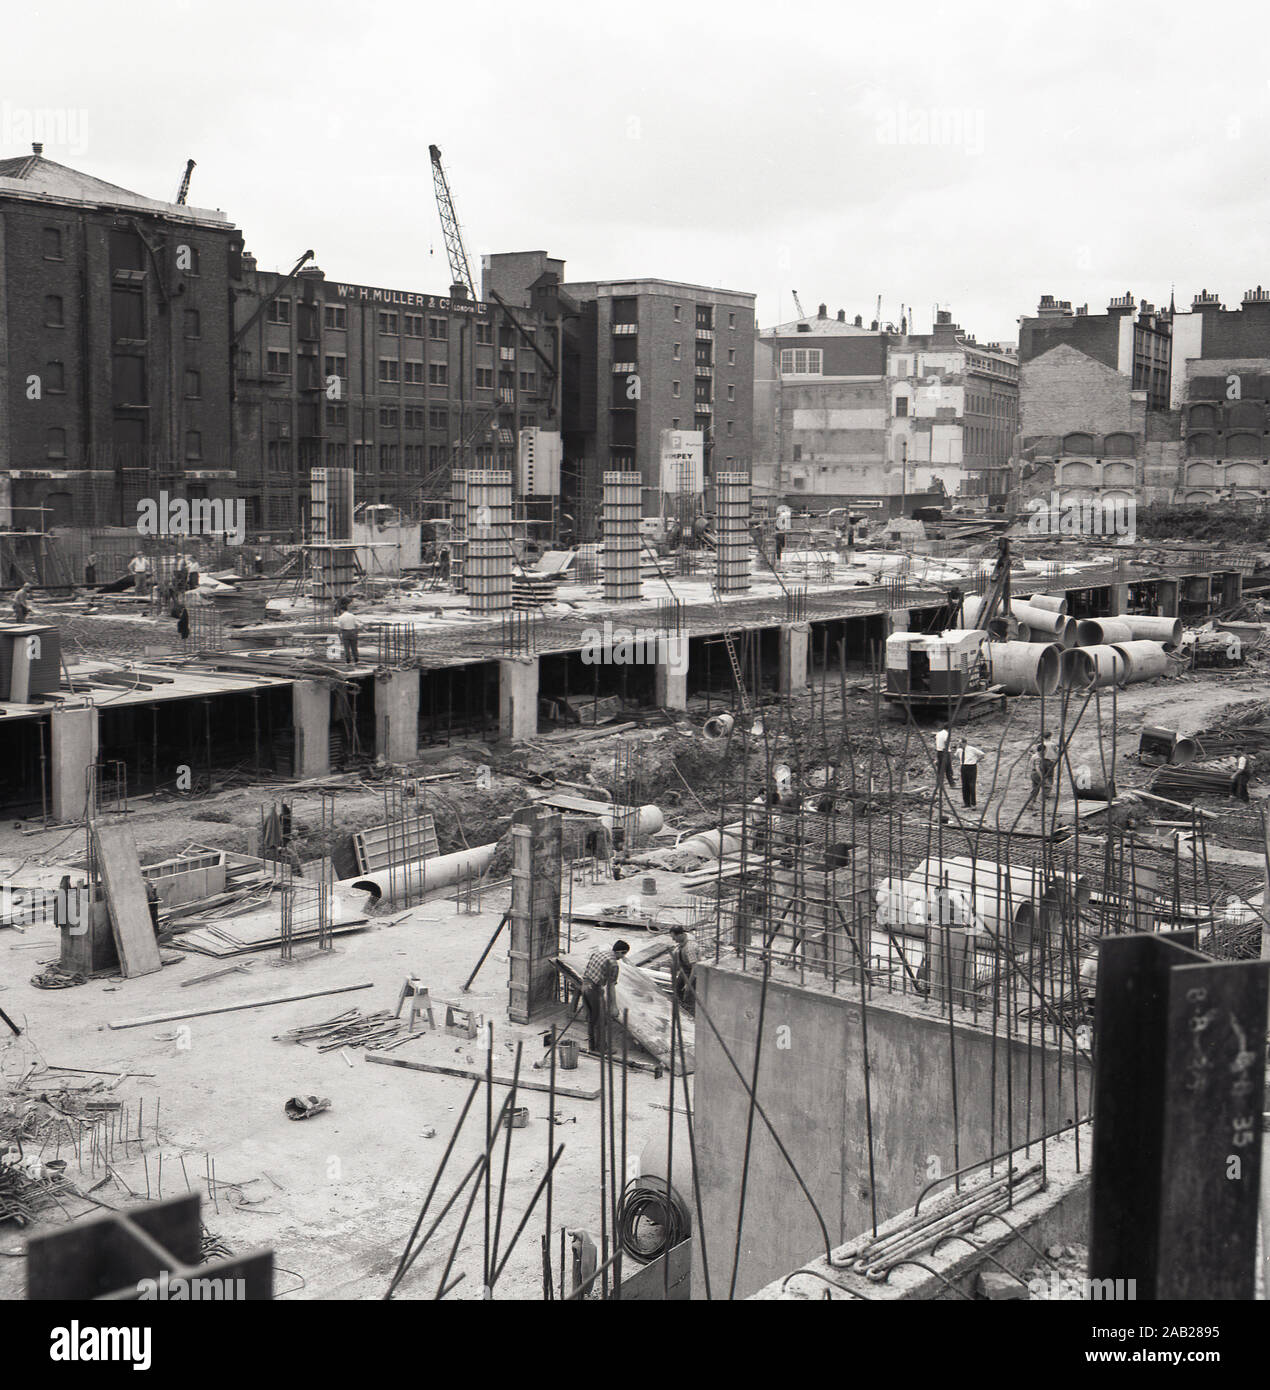 1960er Jahre, historisch, Baustelle, Stadt London, England, Großbritannien, Grundlagen für neue Büroblöcke aus "modernen" Beton. Beachten Sie, dass keiner der Arbeiter auf der riesigen Seite "Hardhats" trägt. Stockfoto